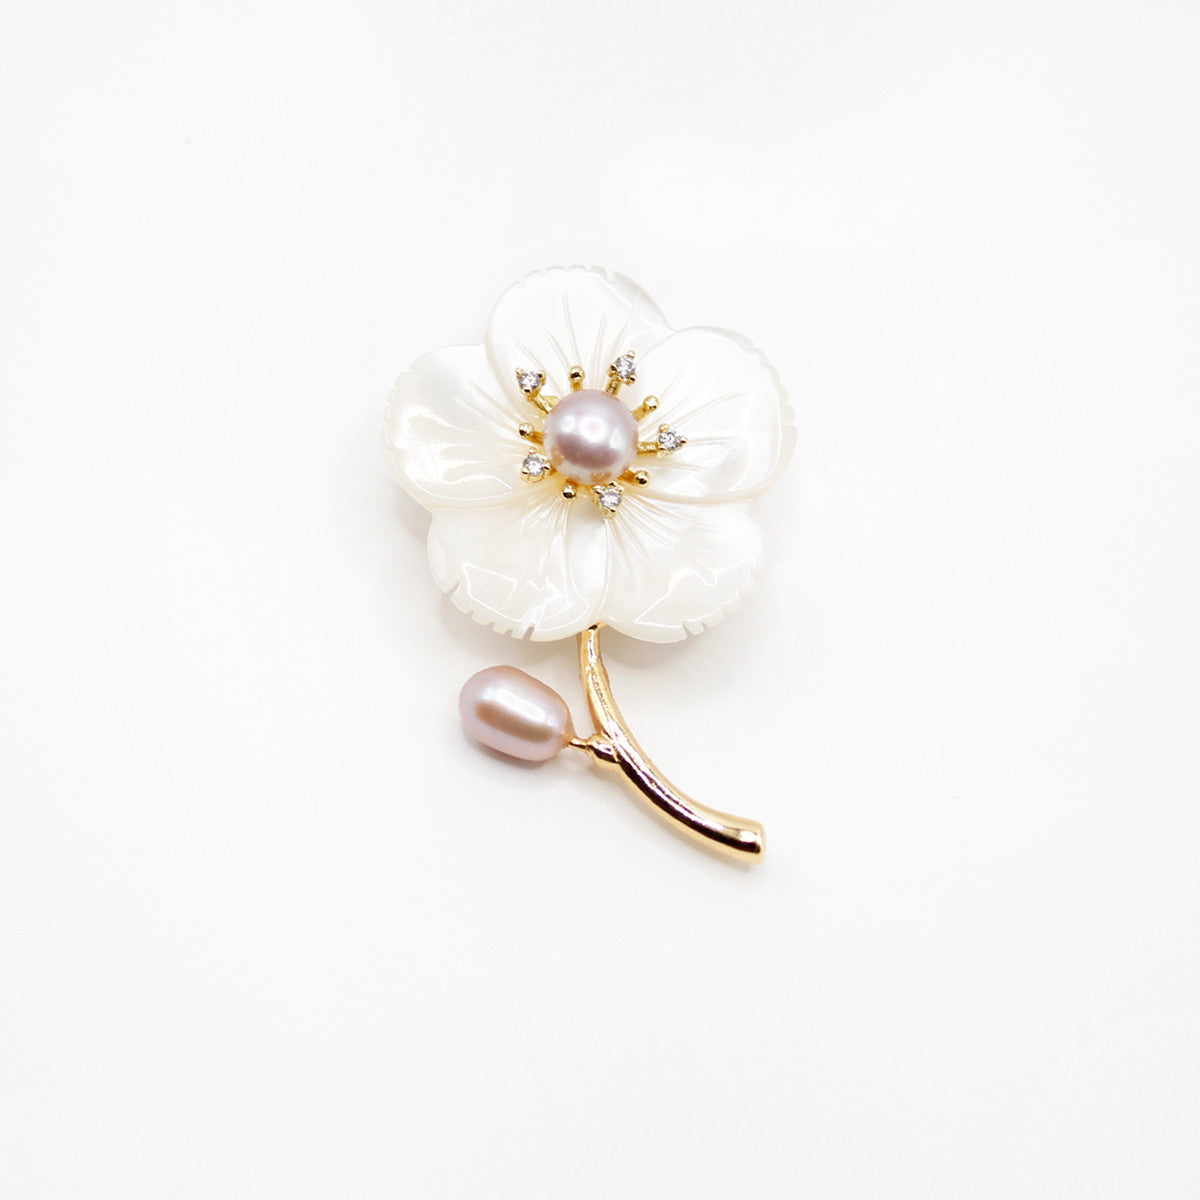 Natural Freshwater Pearls Brooch| 14k Gold Flowers| Elegant, Versatile Accessories